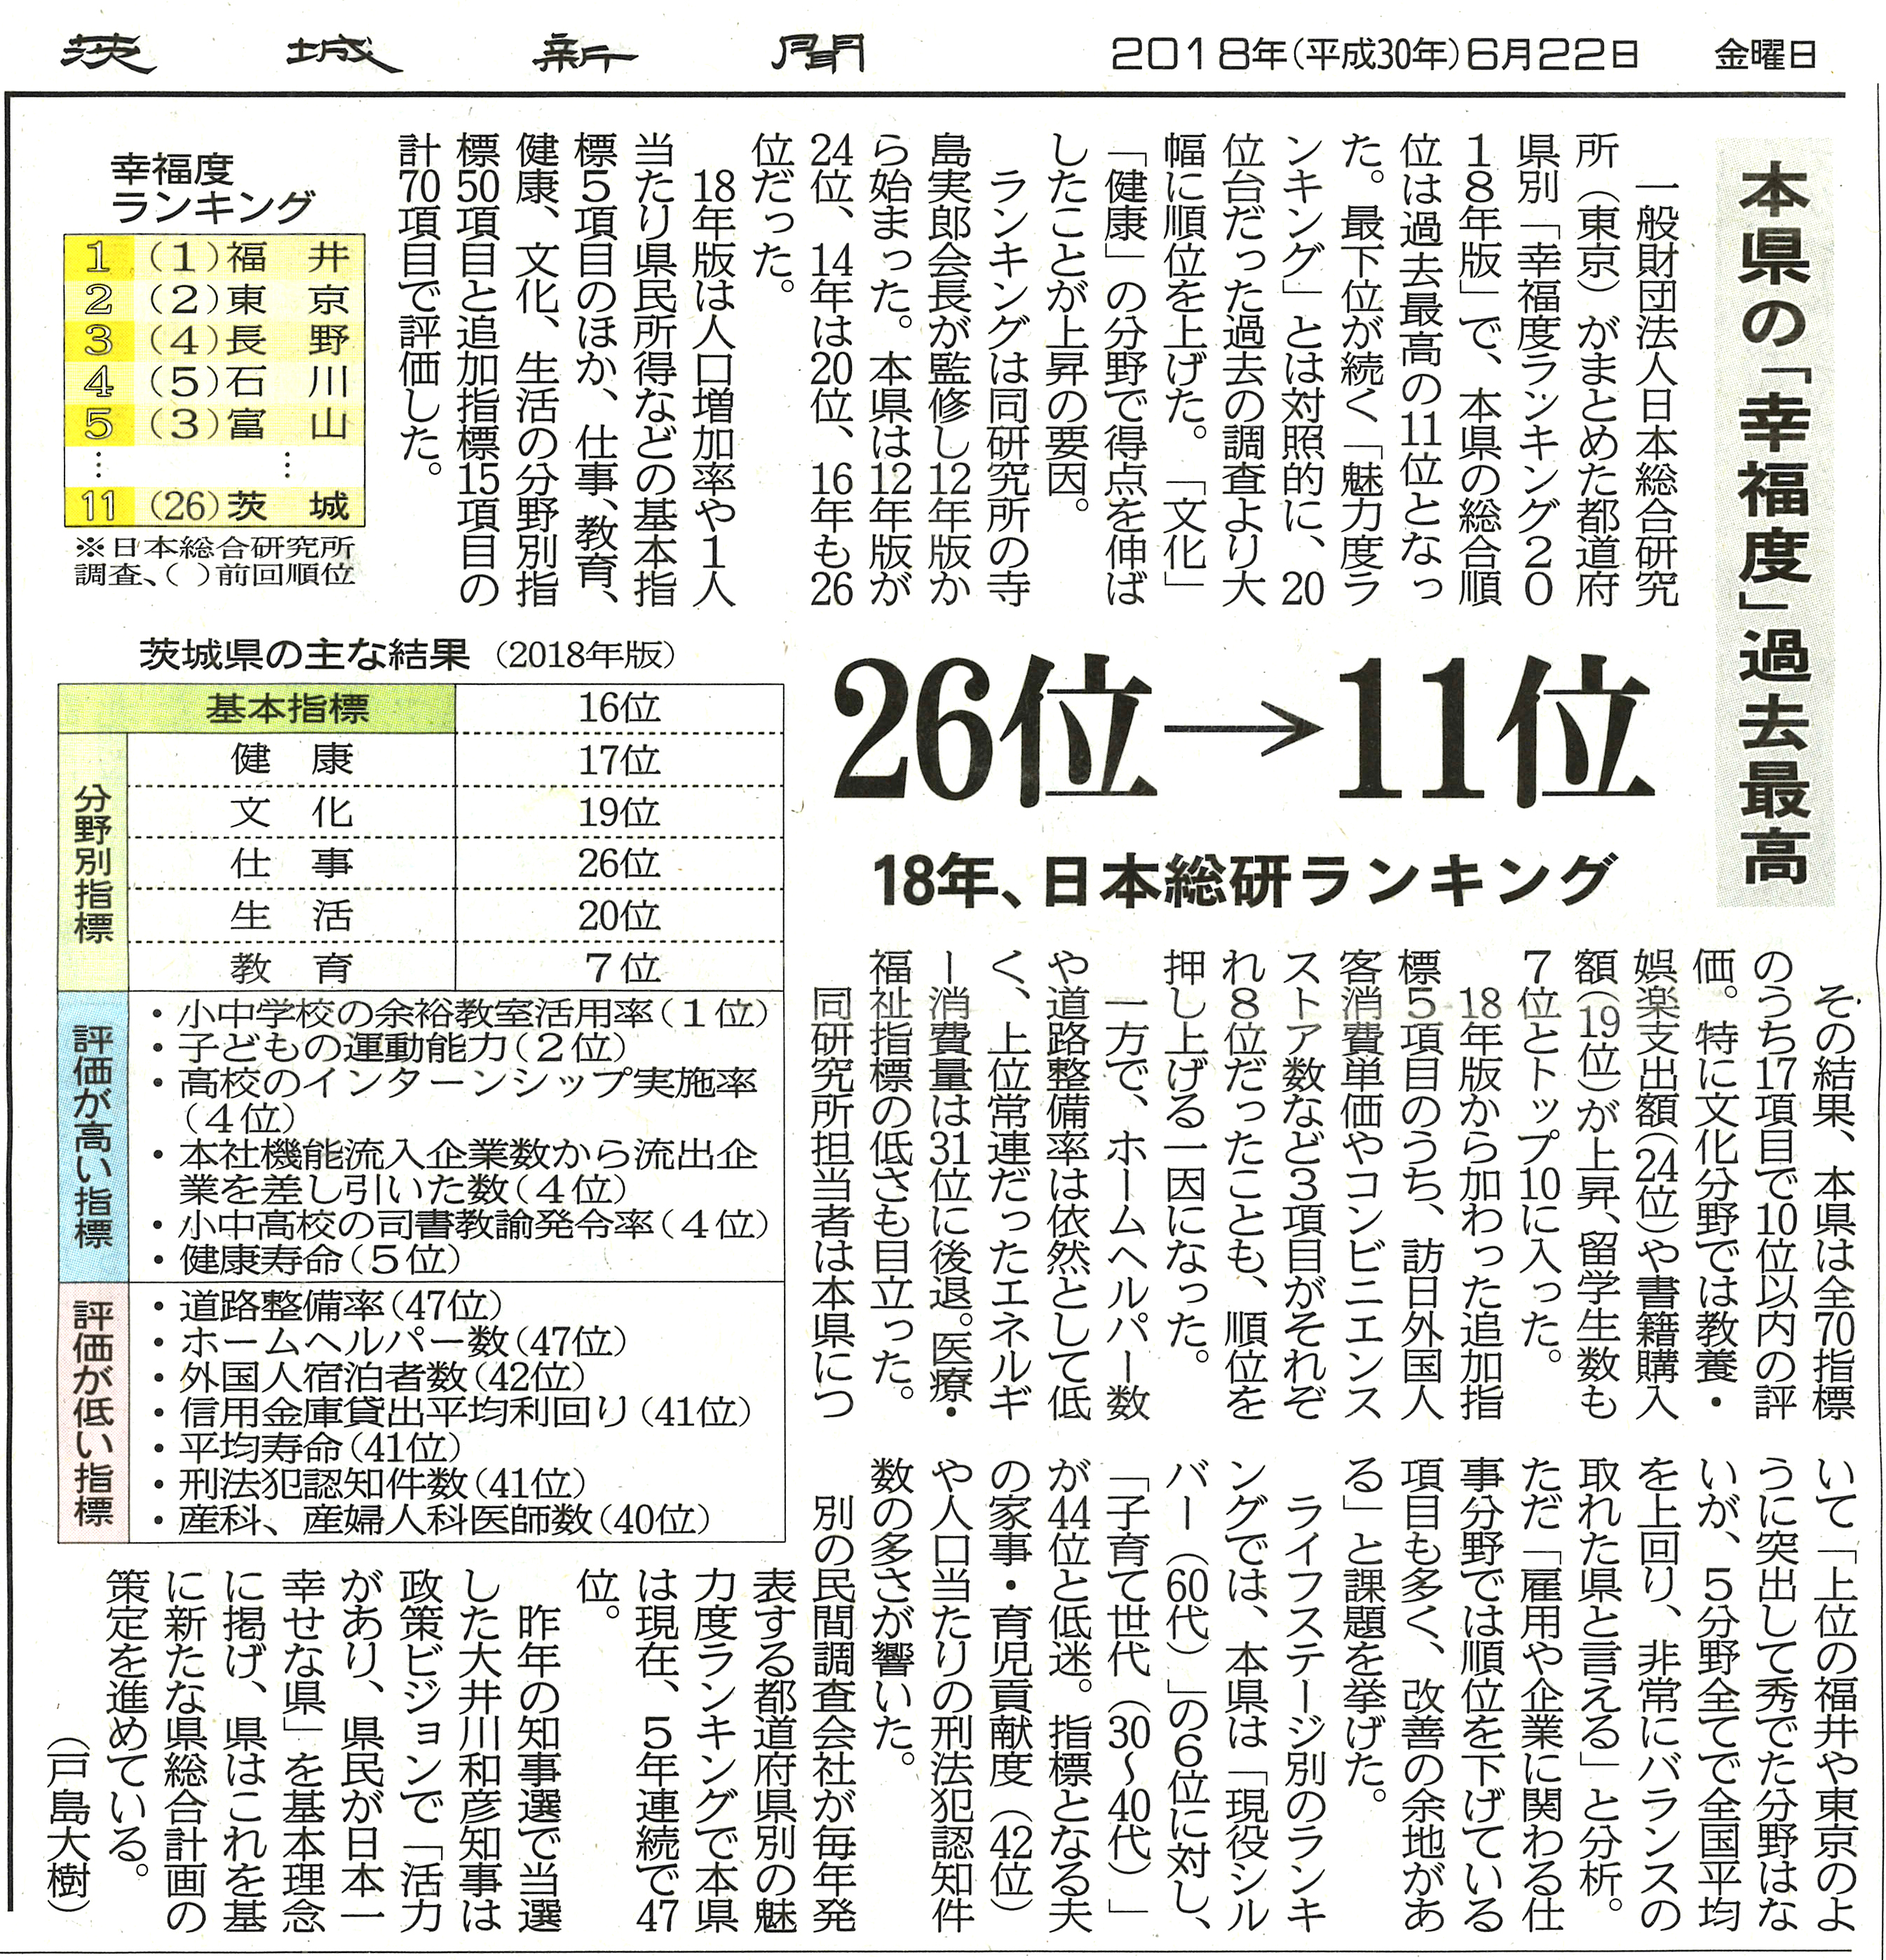 【茨城新聞】本県の「幸福度」過去最高